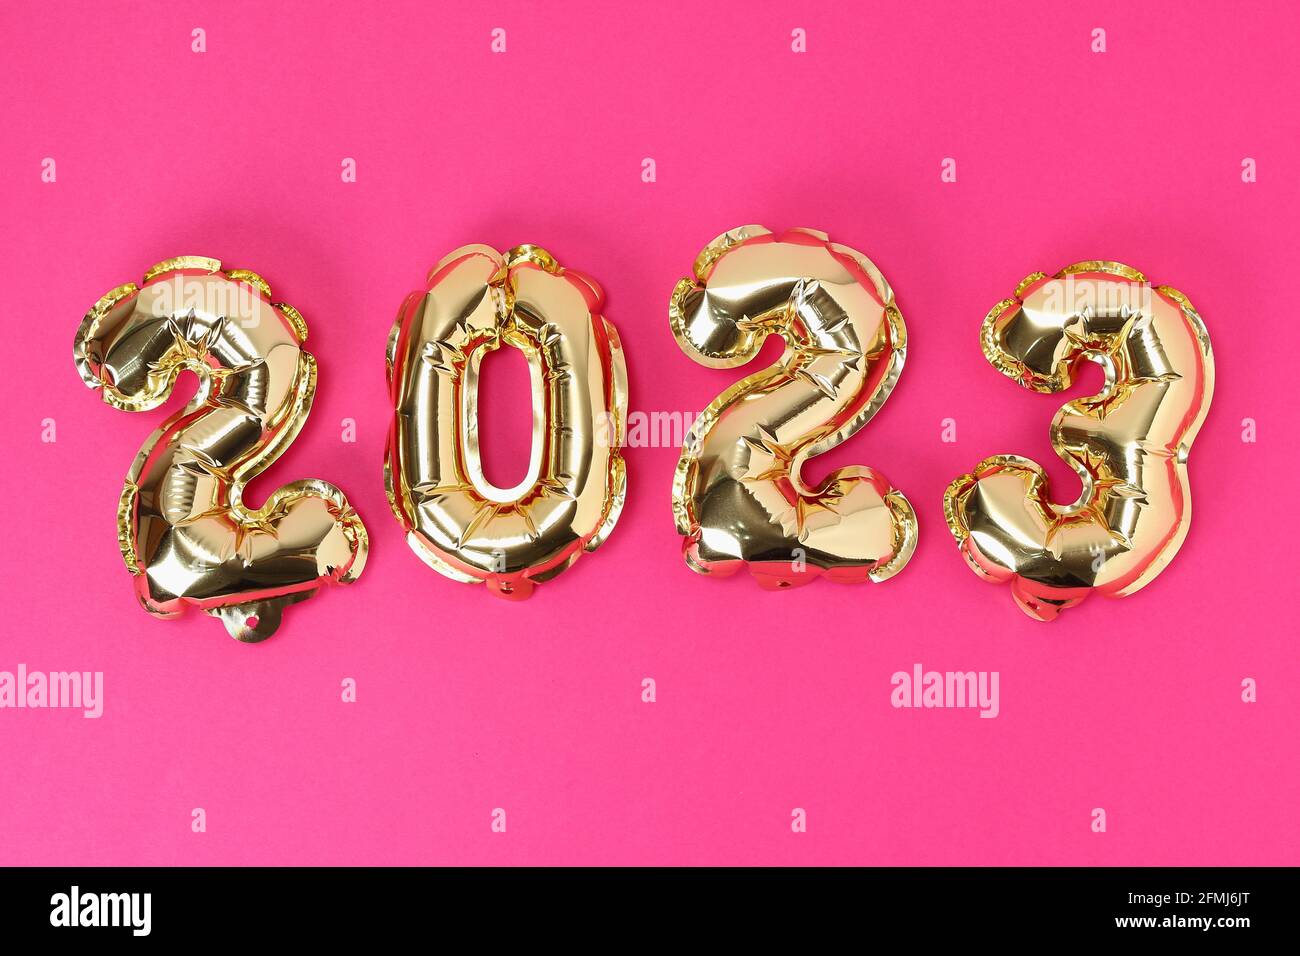 Chào năm mới 2024: Bắt đầu một năm mới với những ước mong và hy vọng mới. Hãy cùng khởi đầu điều mới mẻ và tươi sáng, bằng việc chiêm ngưỡng những hình ảnh độc đáo về chào đón năm mới